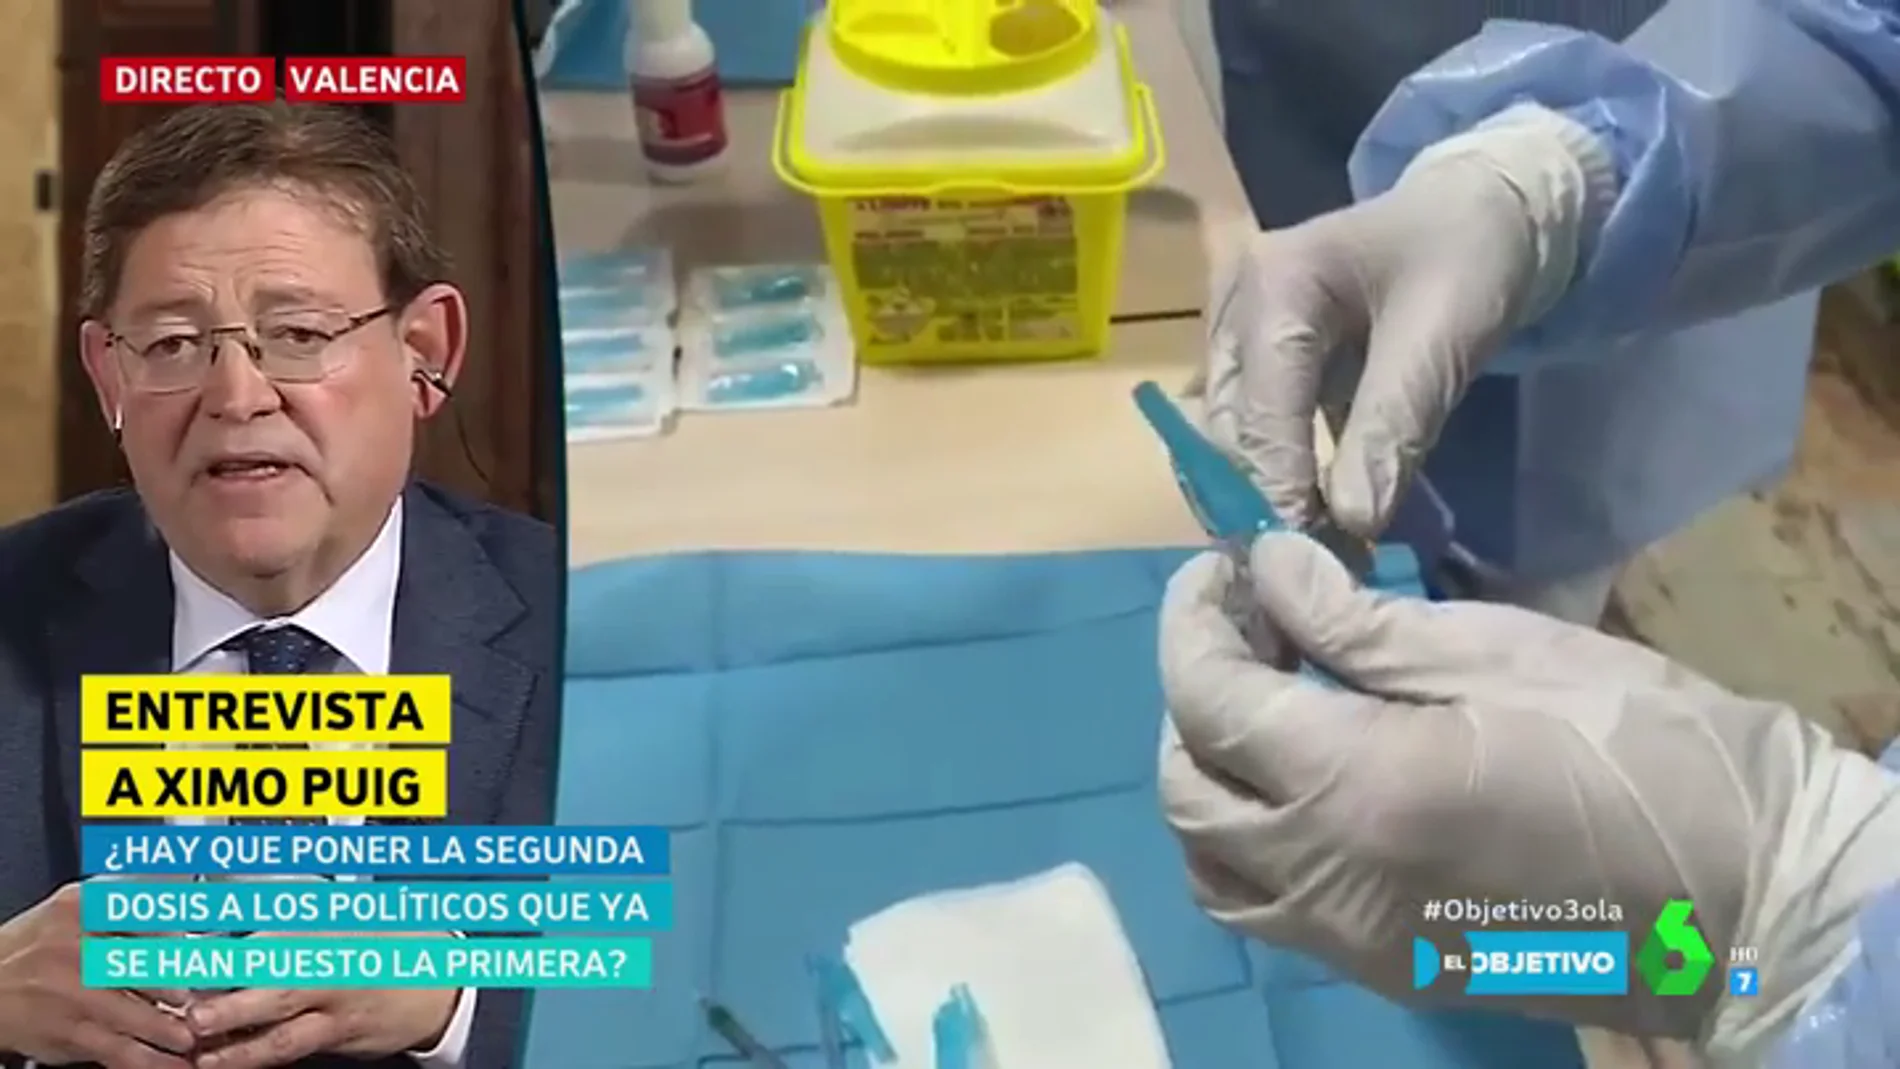 Ximo Puig insiste en no dar la segunda dosis de la vacuna a los que se salten el protocolo: "Se trata de administrarla a quien la necesite"